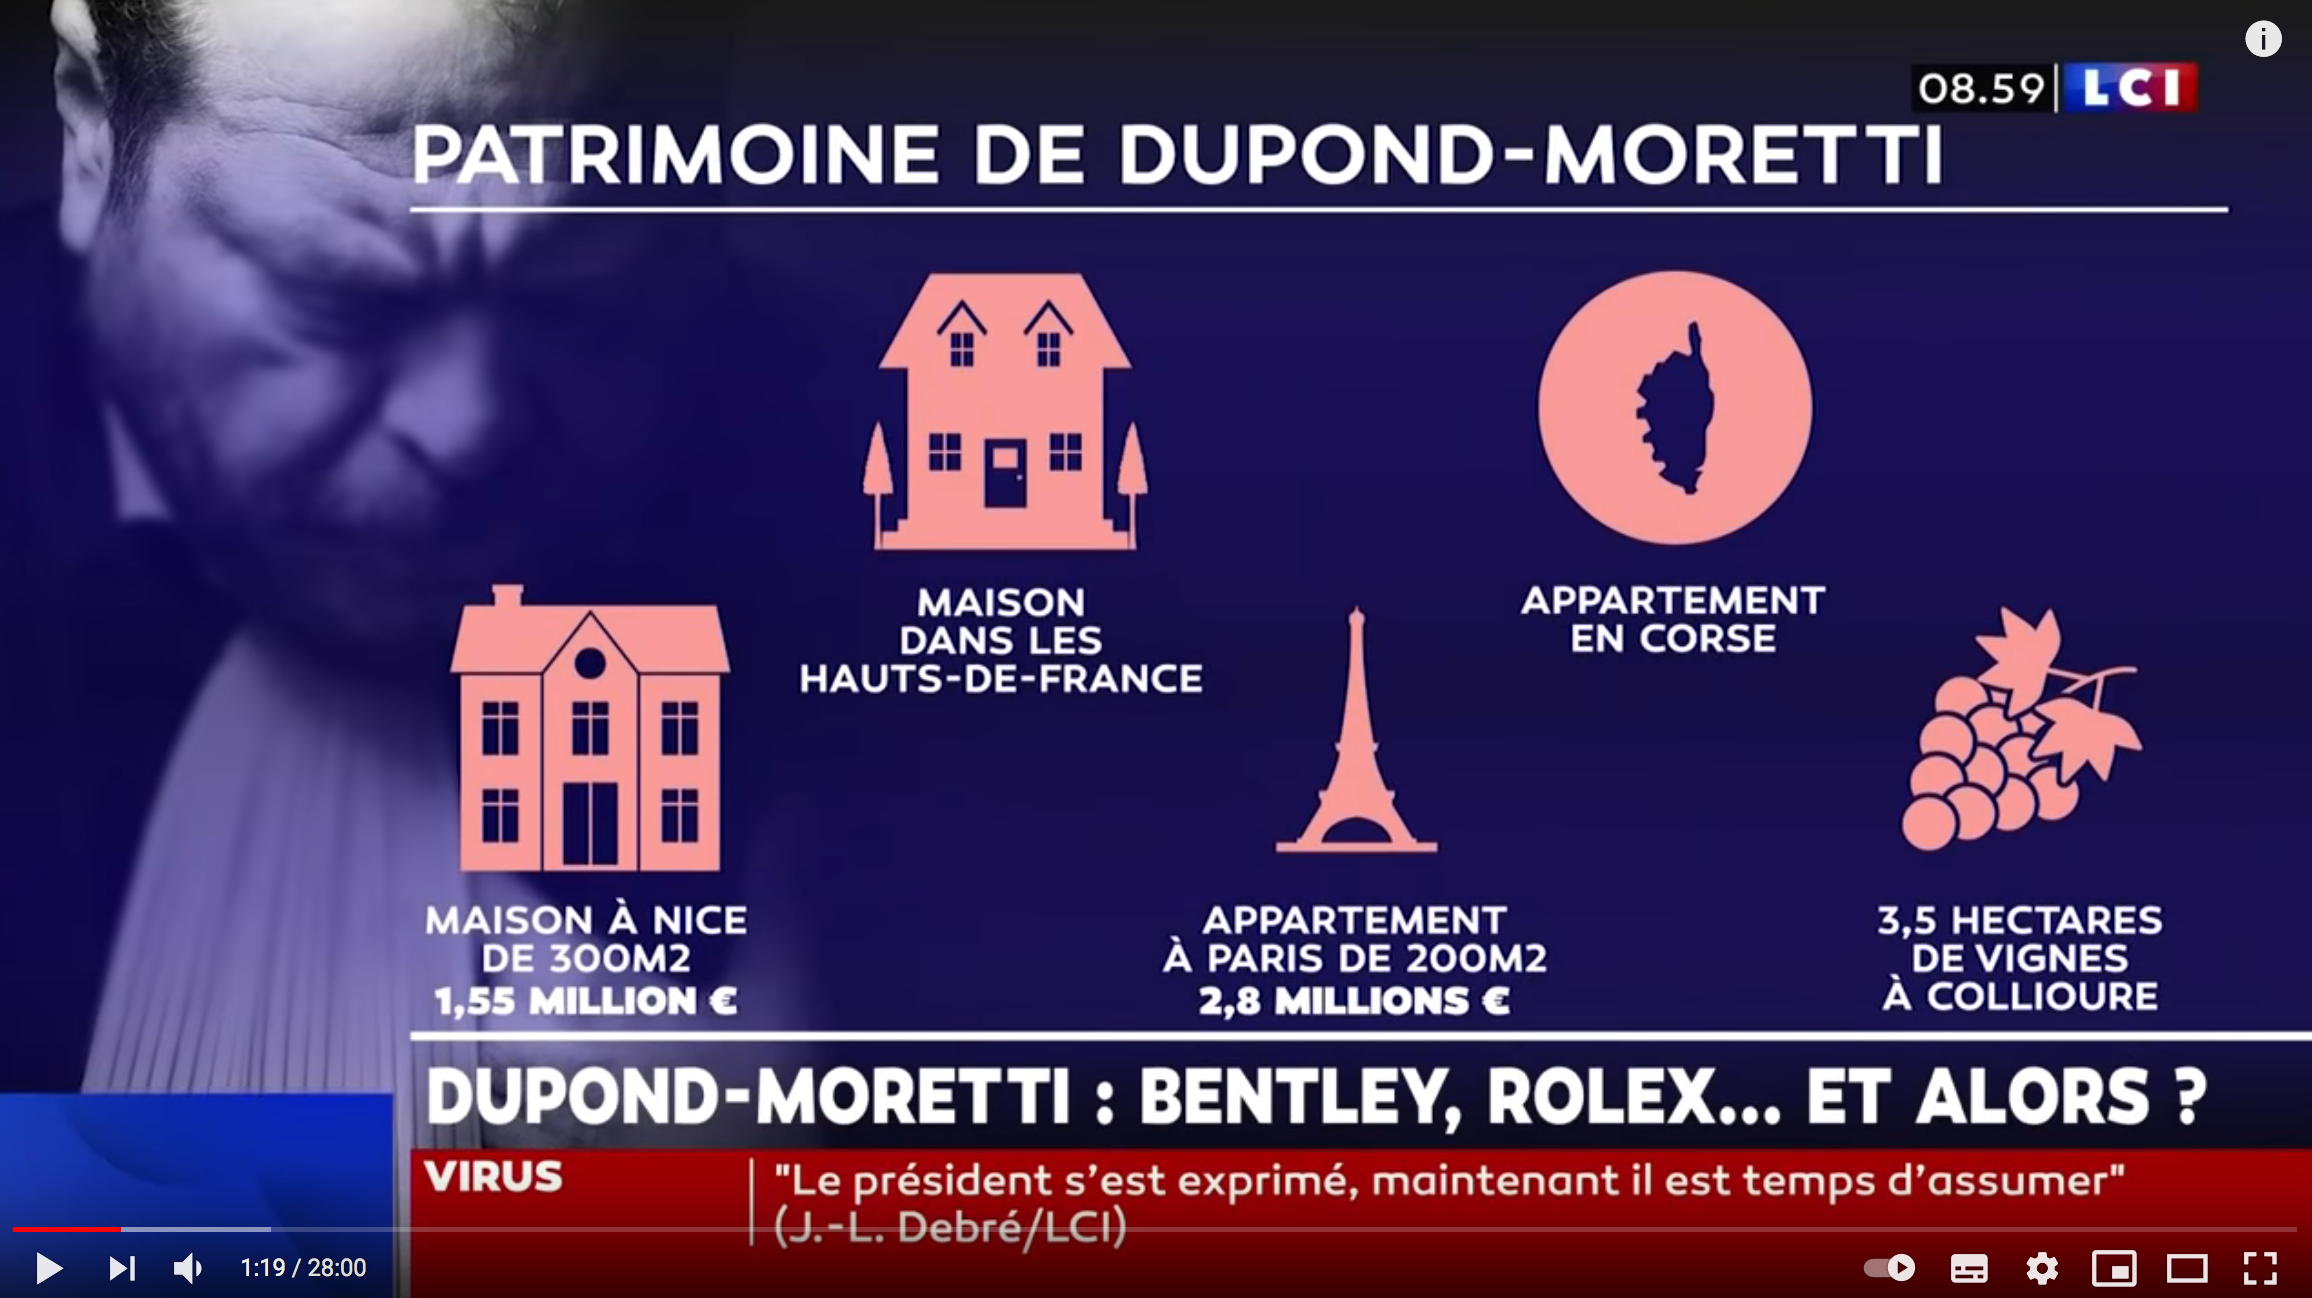 La déclaration de patrimoine d’Éric Dupond-Moretti provoque un débat surréaliste sur LCI